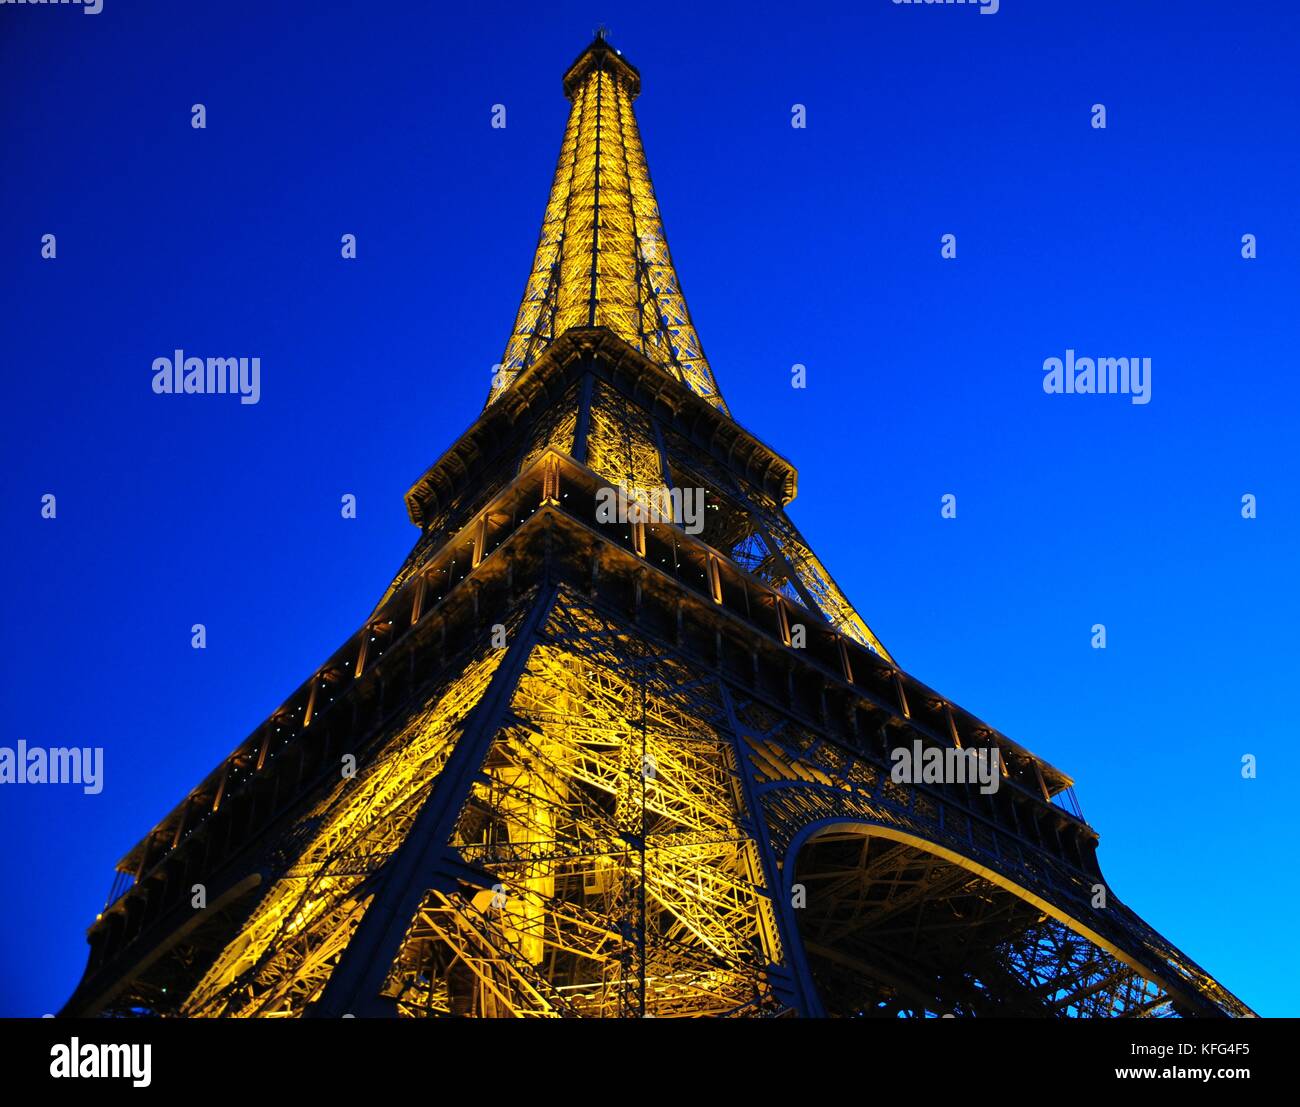 La Tour Eiffel illuminée à Paris France au crépuscule. Site artistique célèbre. Architecture Résumé Banque D'Images